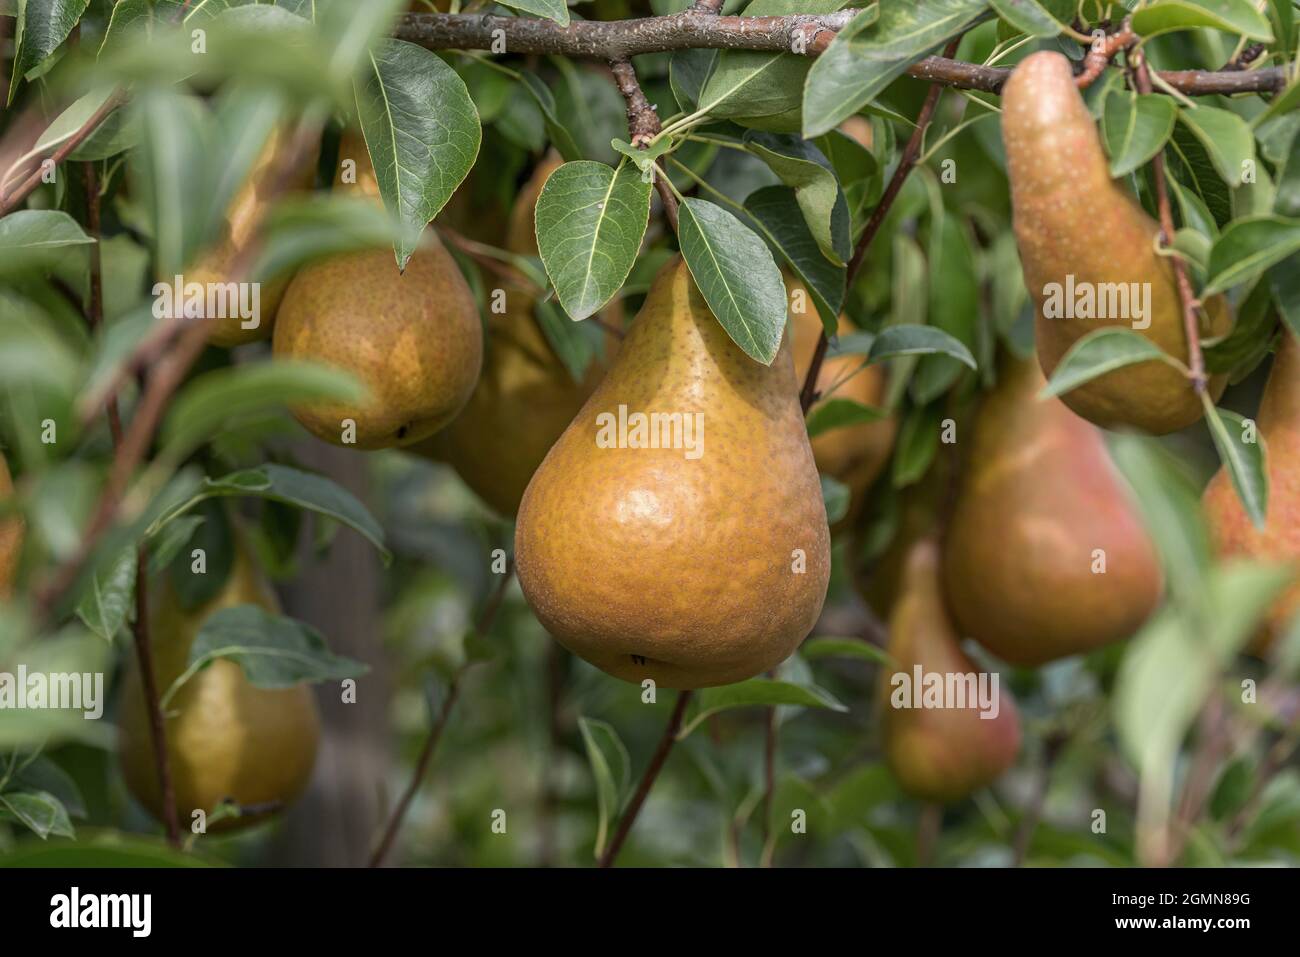 Common pear (Pyrus communis 'Durondeau de Tongre', Pyrus communis Durondeau de Tongre), pear on a tree, cultivar Durondeau de Tongre Stock Photo